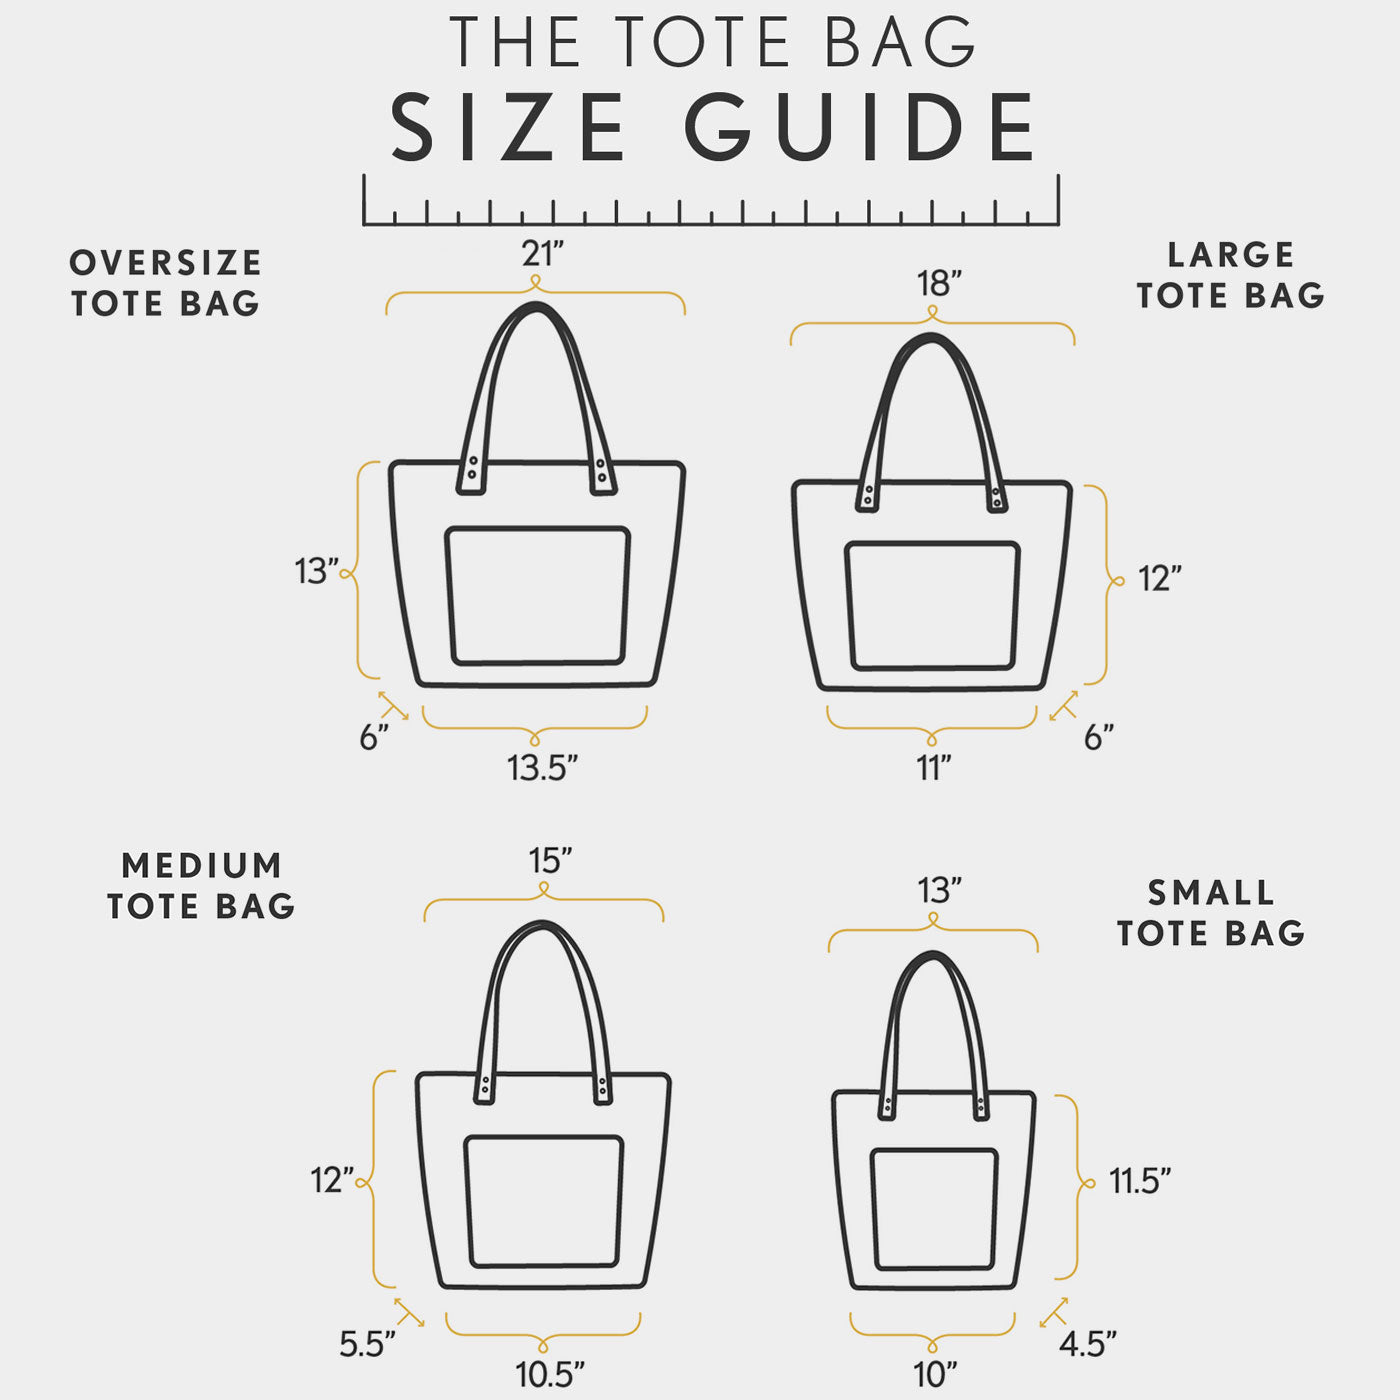 The Simply E Bucket Bag